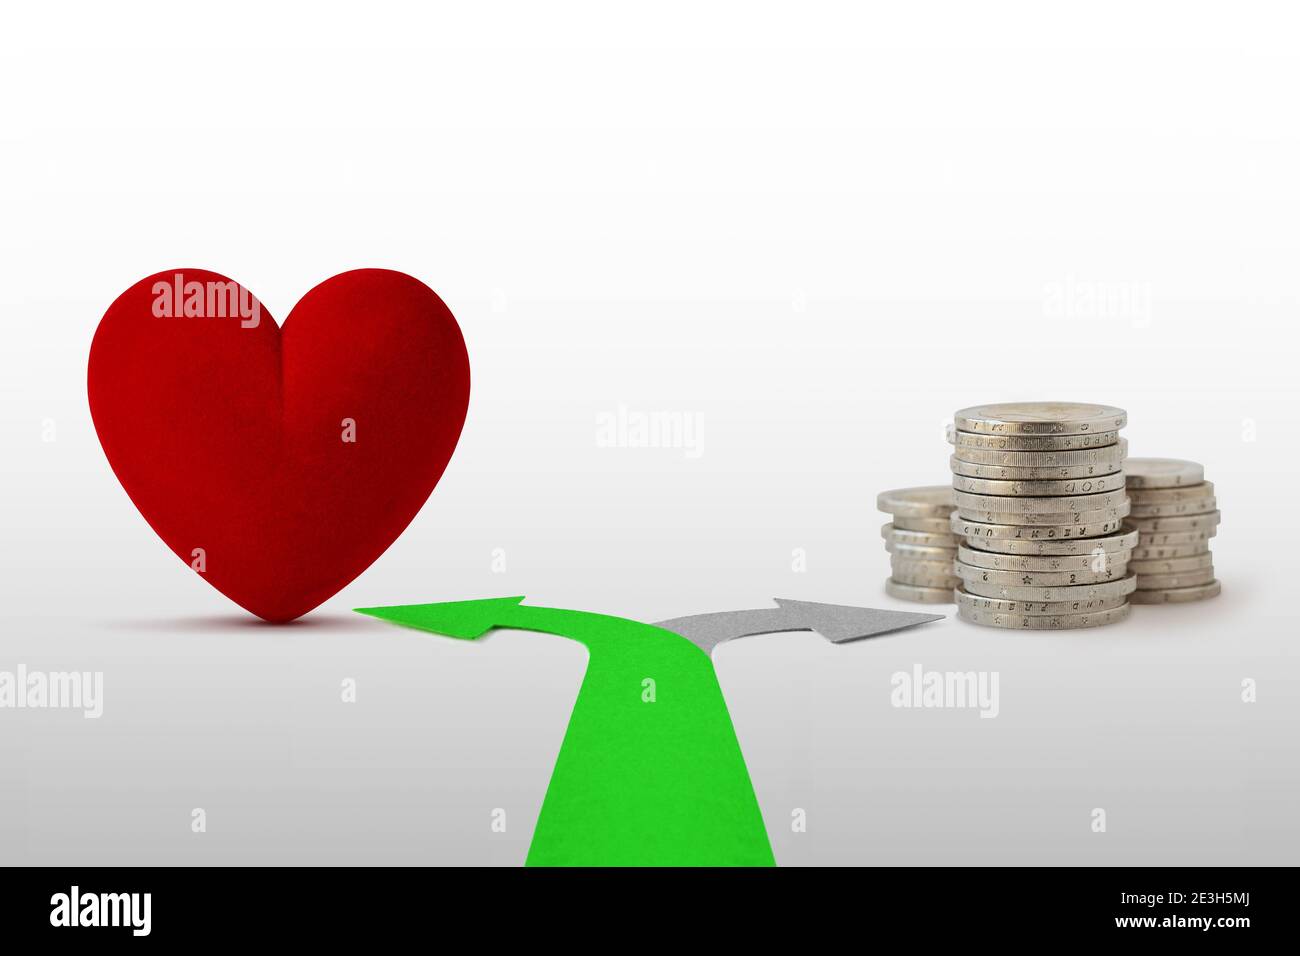 Zwei-Wege-Pfeile mit Herz und Münzen - Konzept Liebe statt Geld wählen Stockfoto